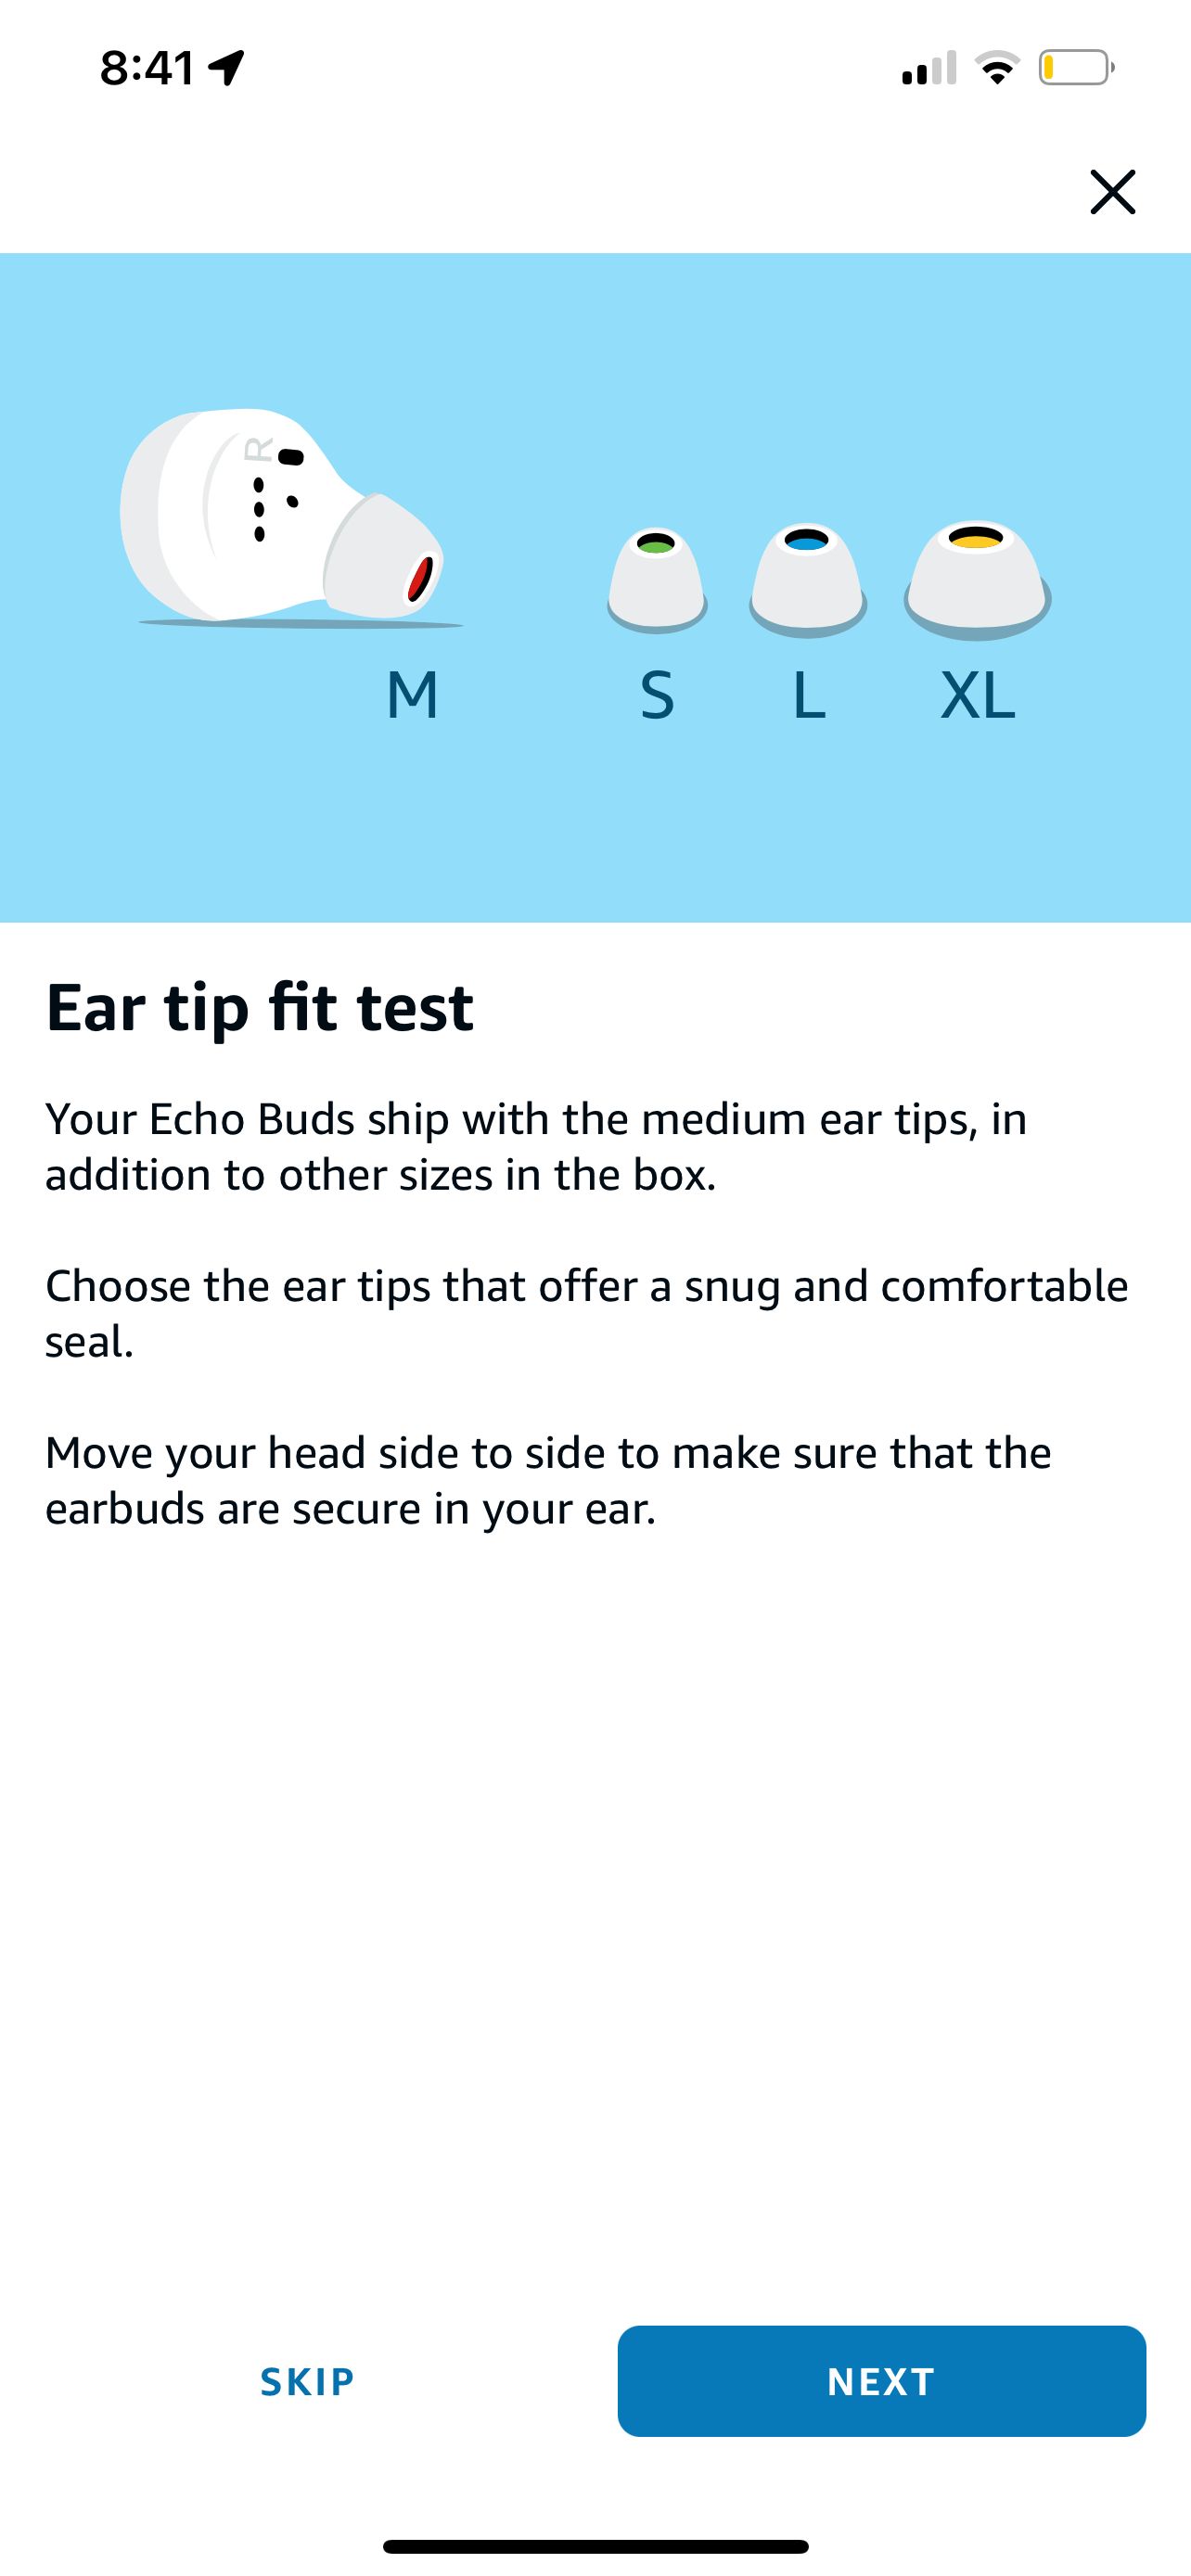 Echo buds ear fit test start